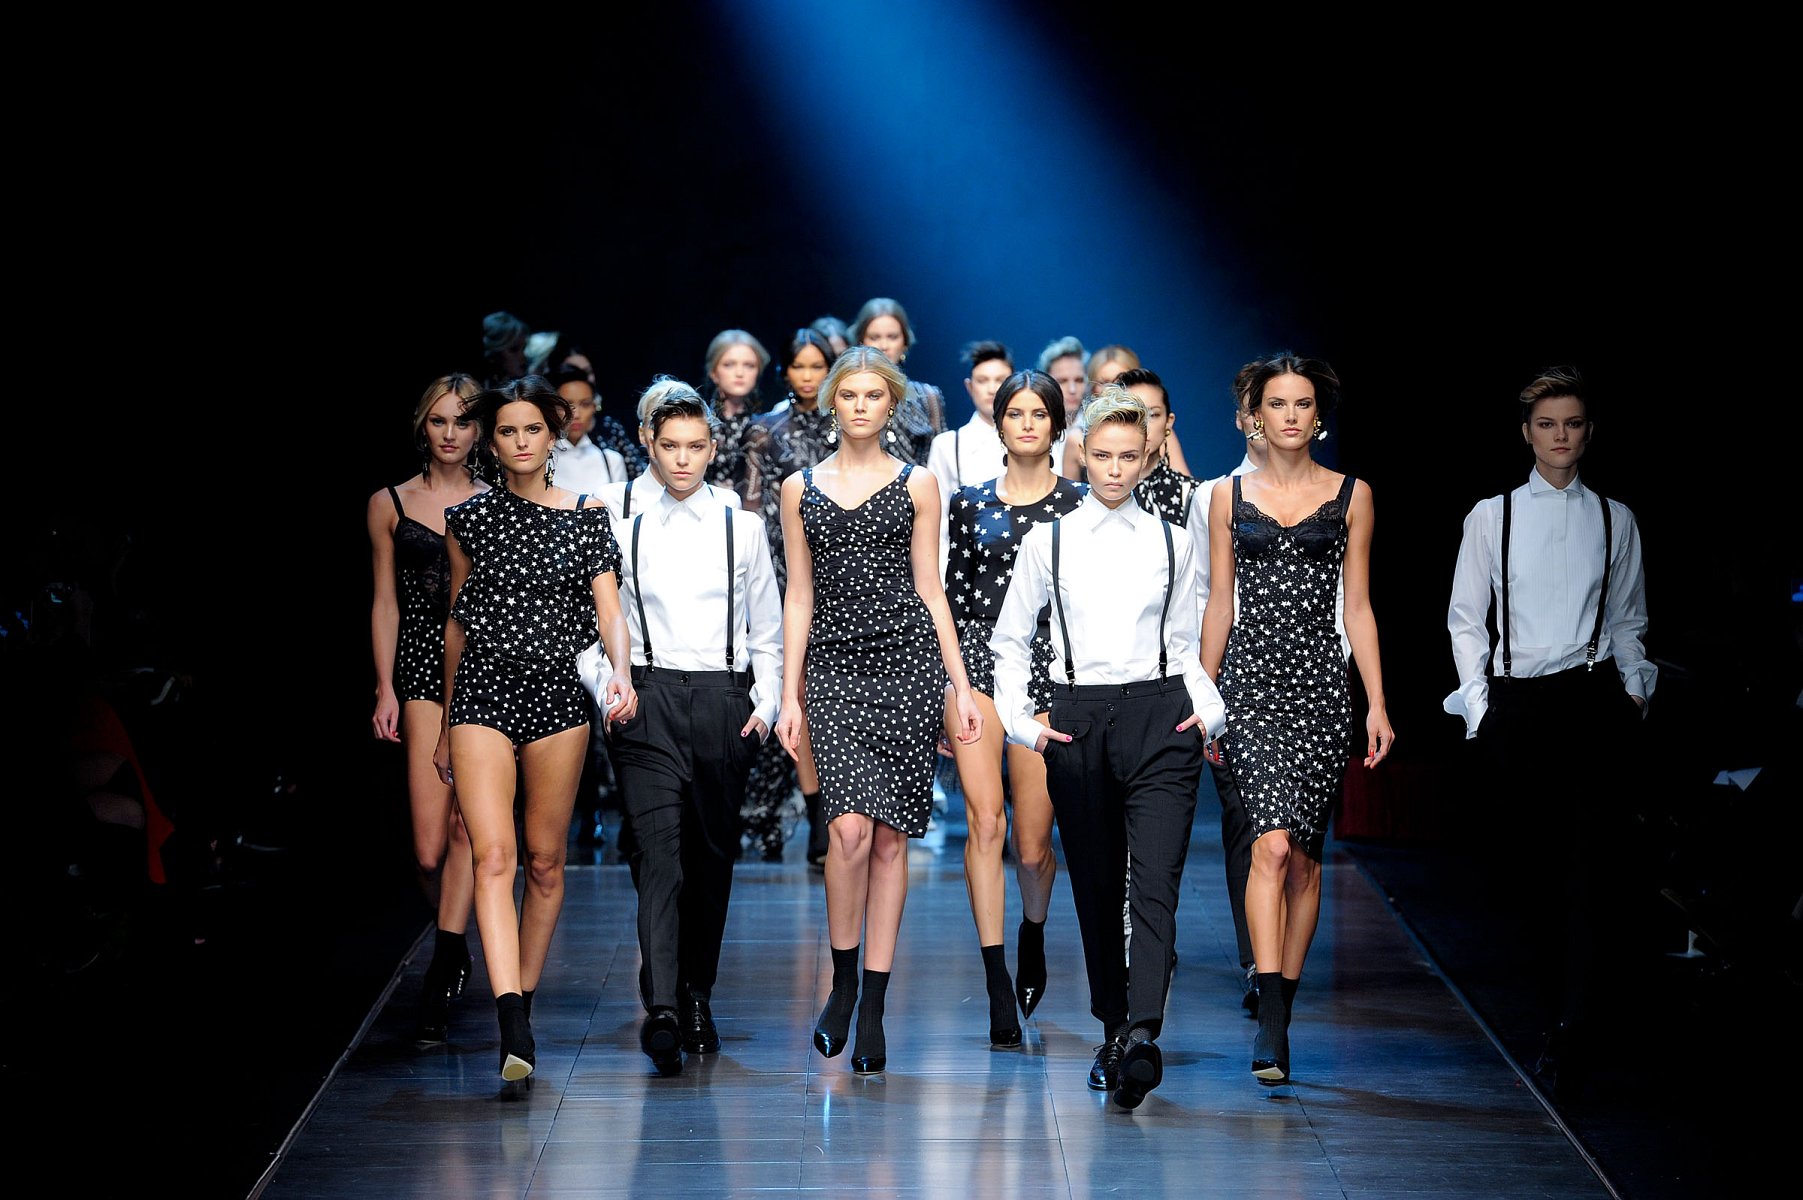 دولتشي أند جابانا [Dolce & Gabbana] خريف-شتاء 2011-2012 - ملابس جاهزة - 1